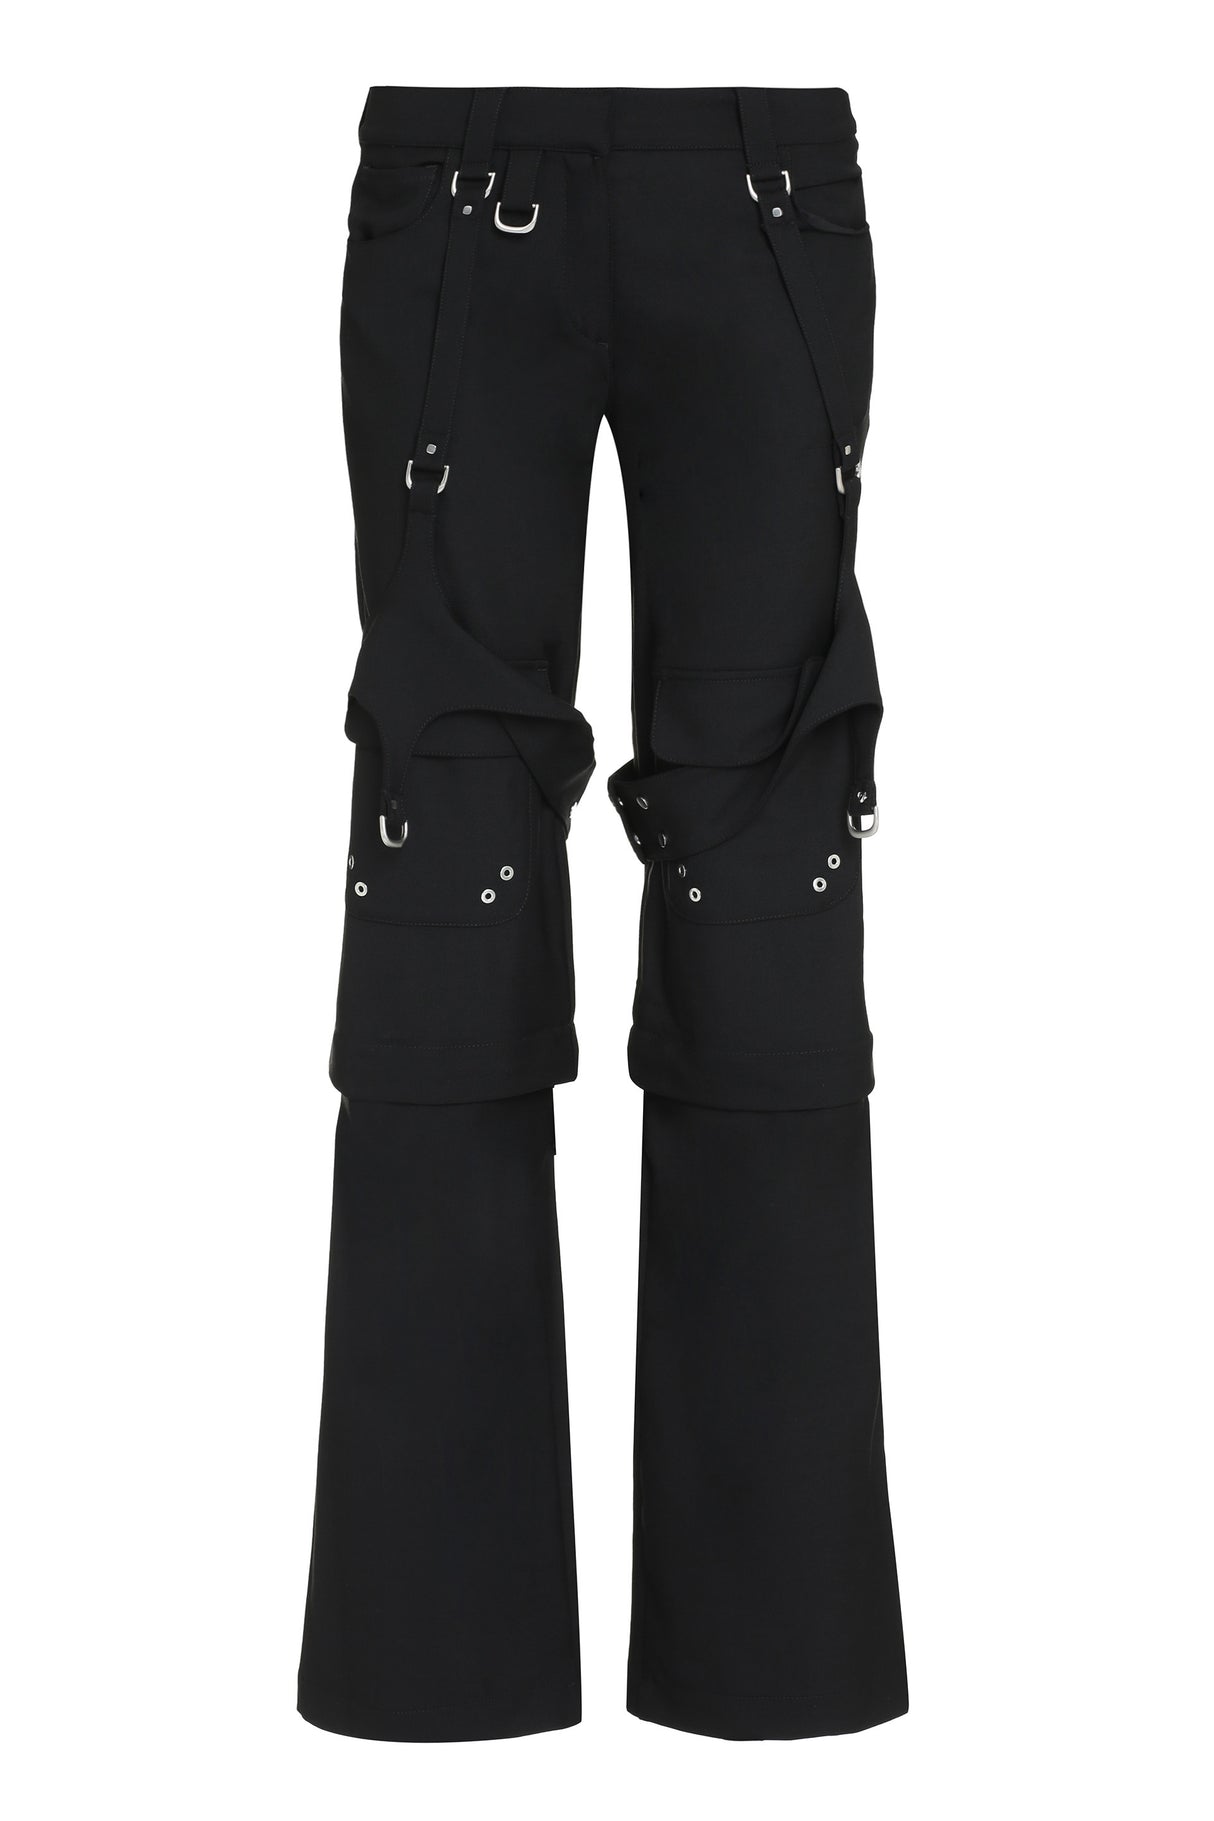 女性用ブラックカーゴパンツ - フロントストラップ付き - マルチポケットデザイン - レギュラーフィット